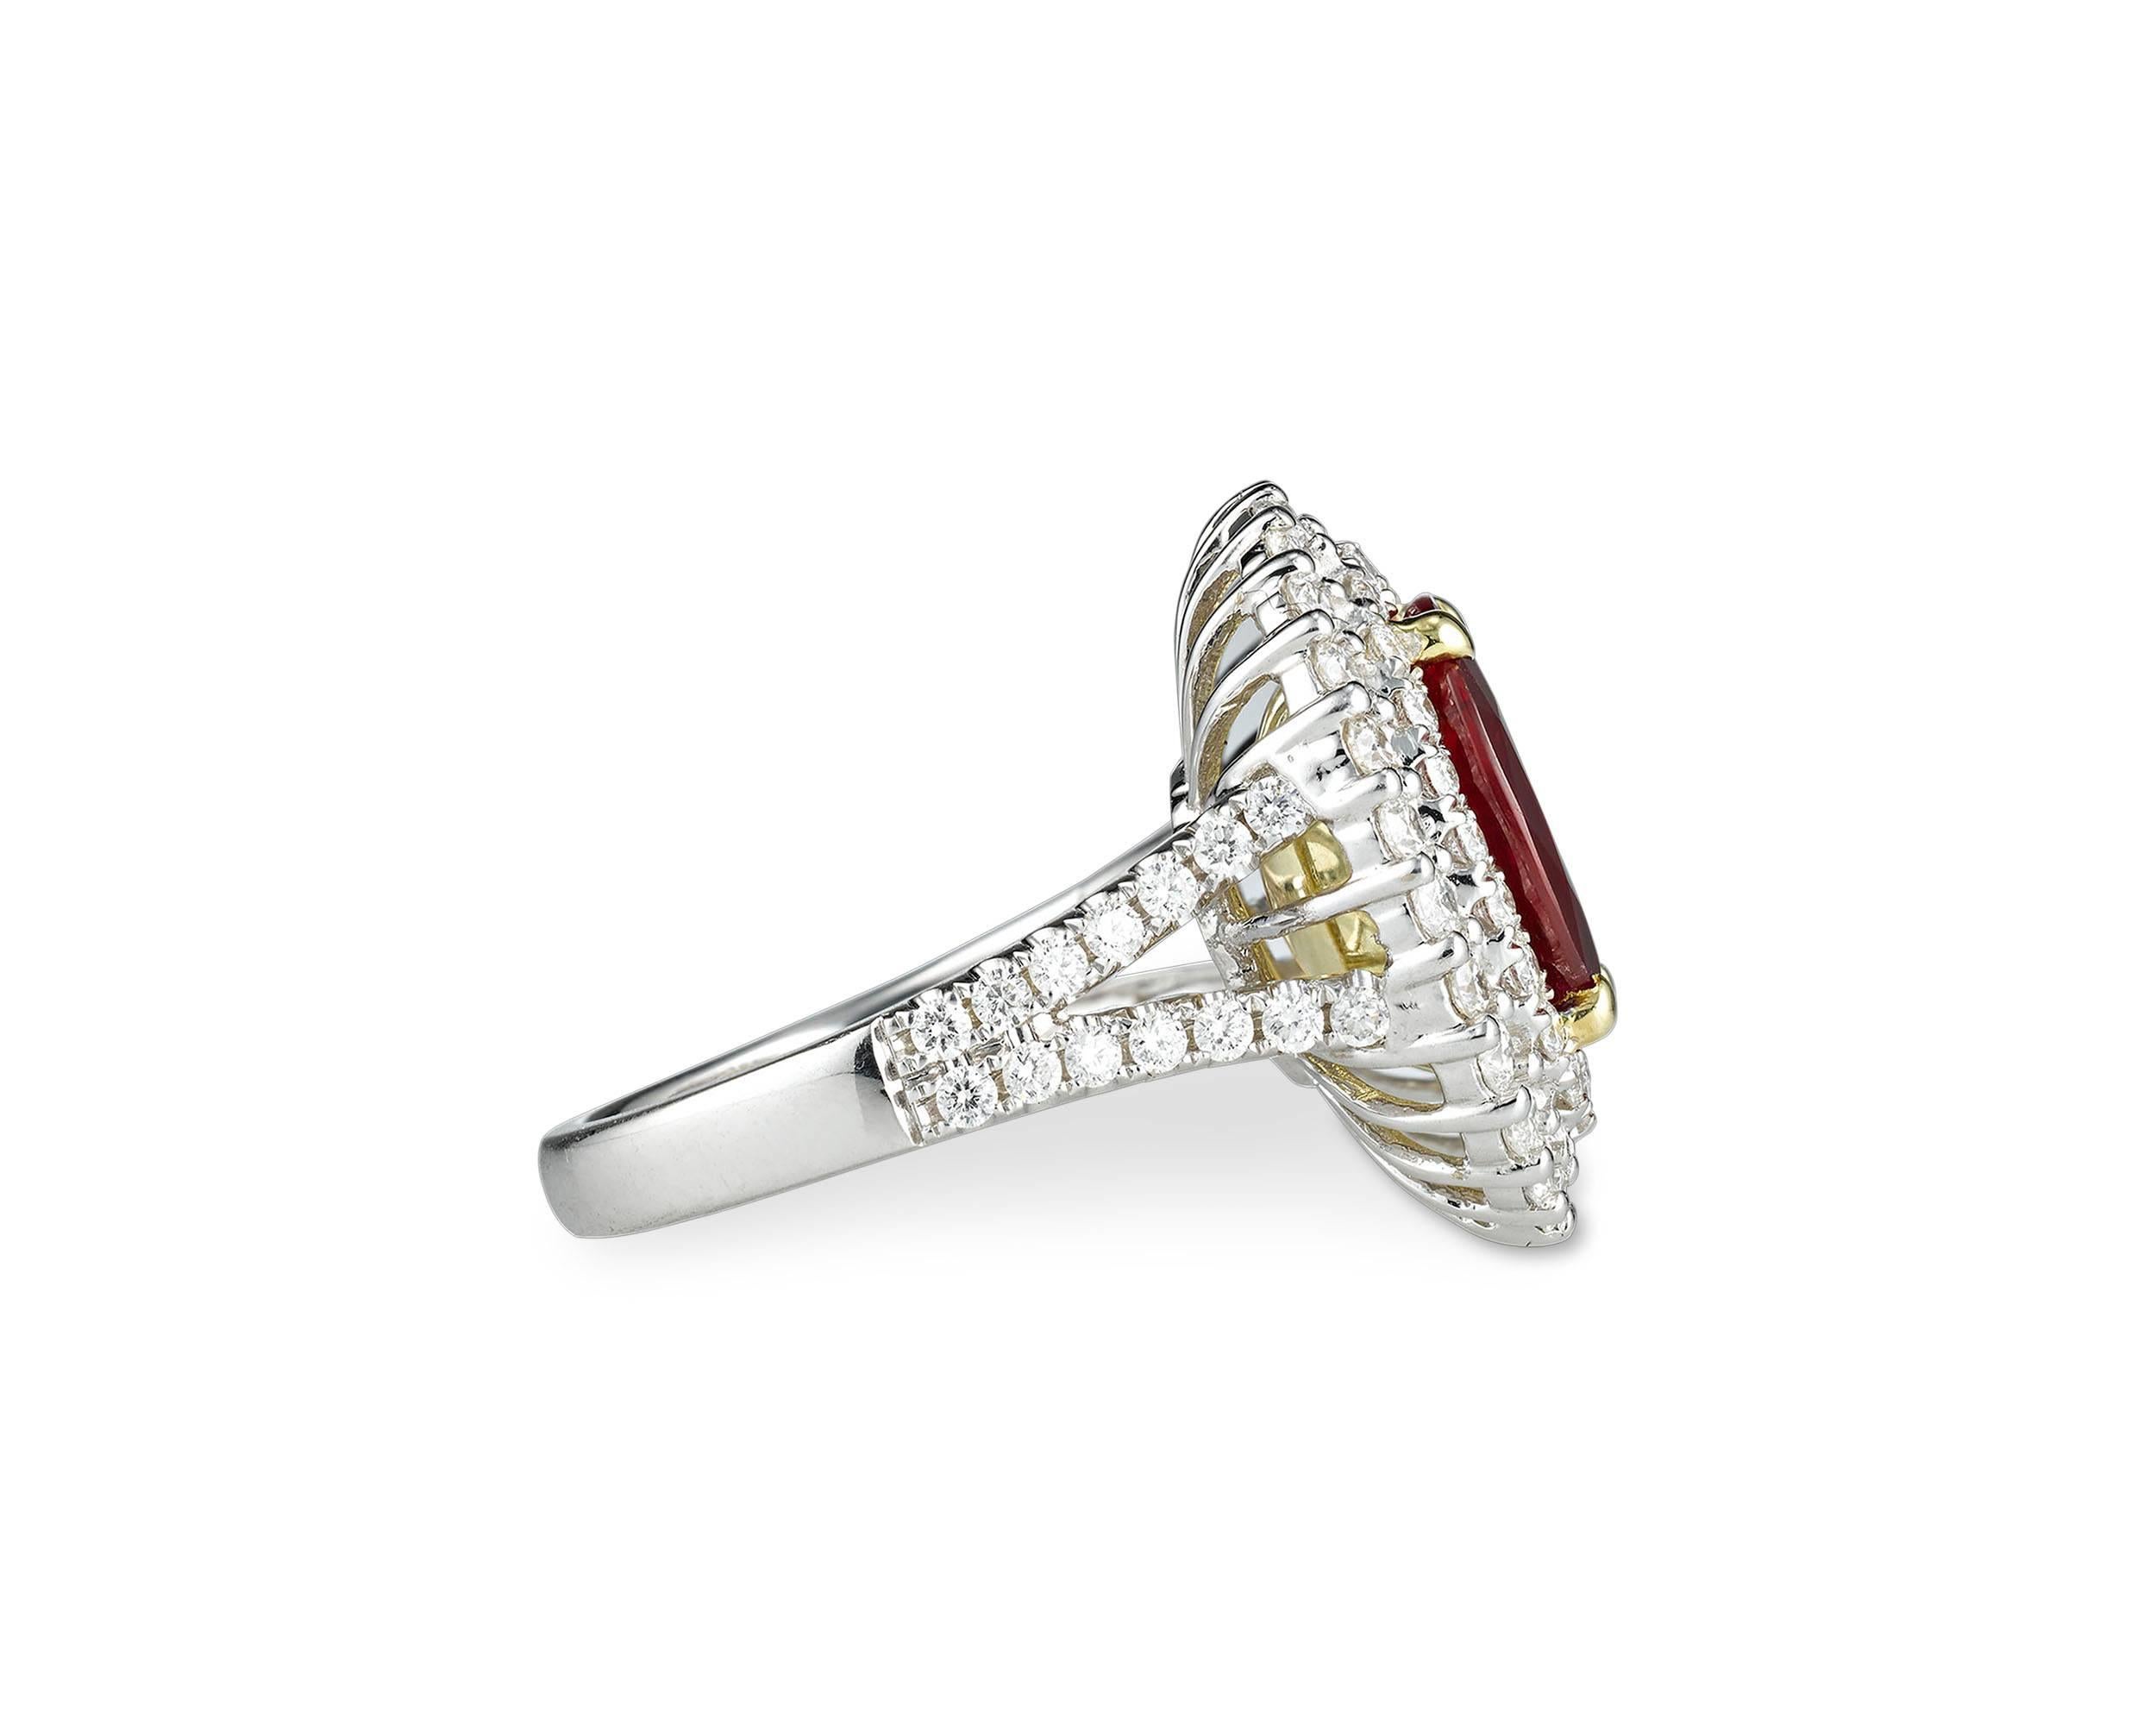 In der Mitte dieses eleganten Rings funkelt ein ovaler Rubin von 3,95 Karat. Die umliegenden weißen Diamanten mit einem Gesamtgewicht von 1,53 Karat verstärken den dramatischen Glanz des markanten Edelsteins. Die Diamanten bilden einen kühnen